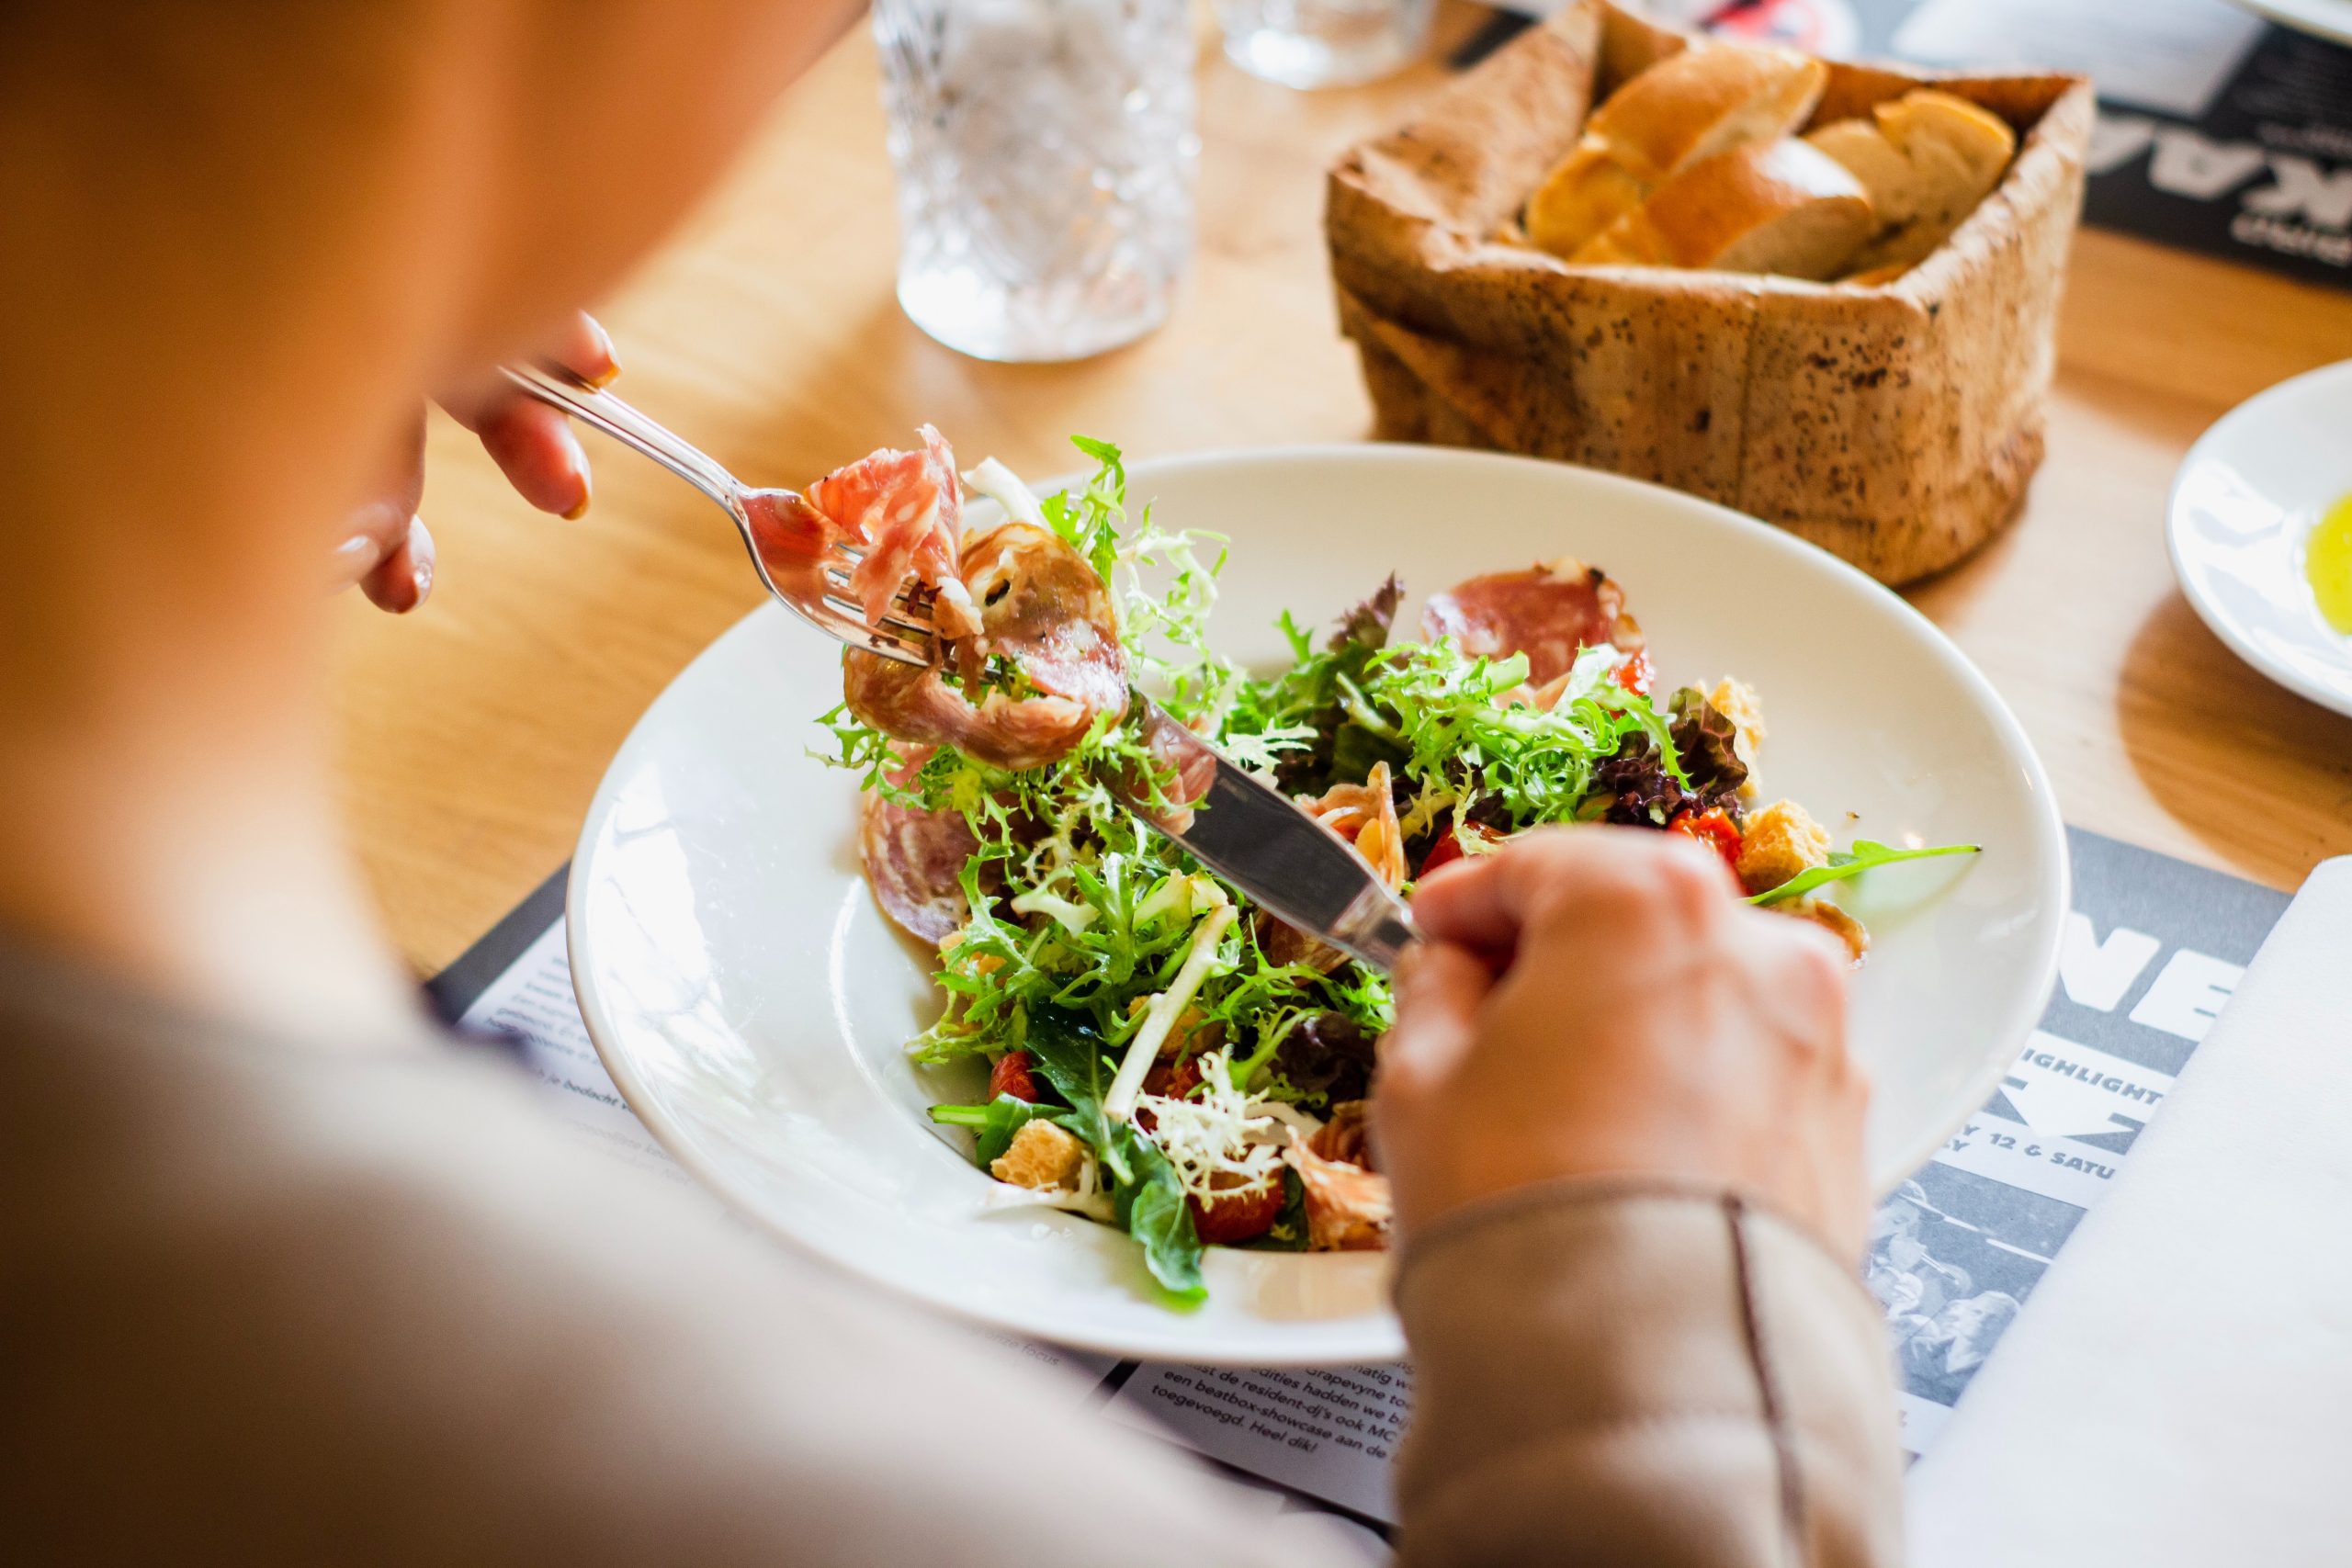 Alimentation et santé mentale : optimiser ses fonctions cognitives grâce au contenu de son assiette